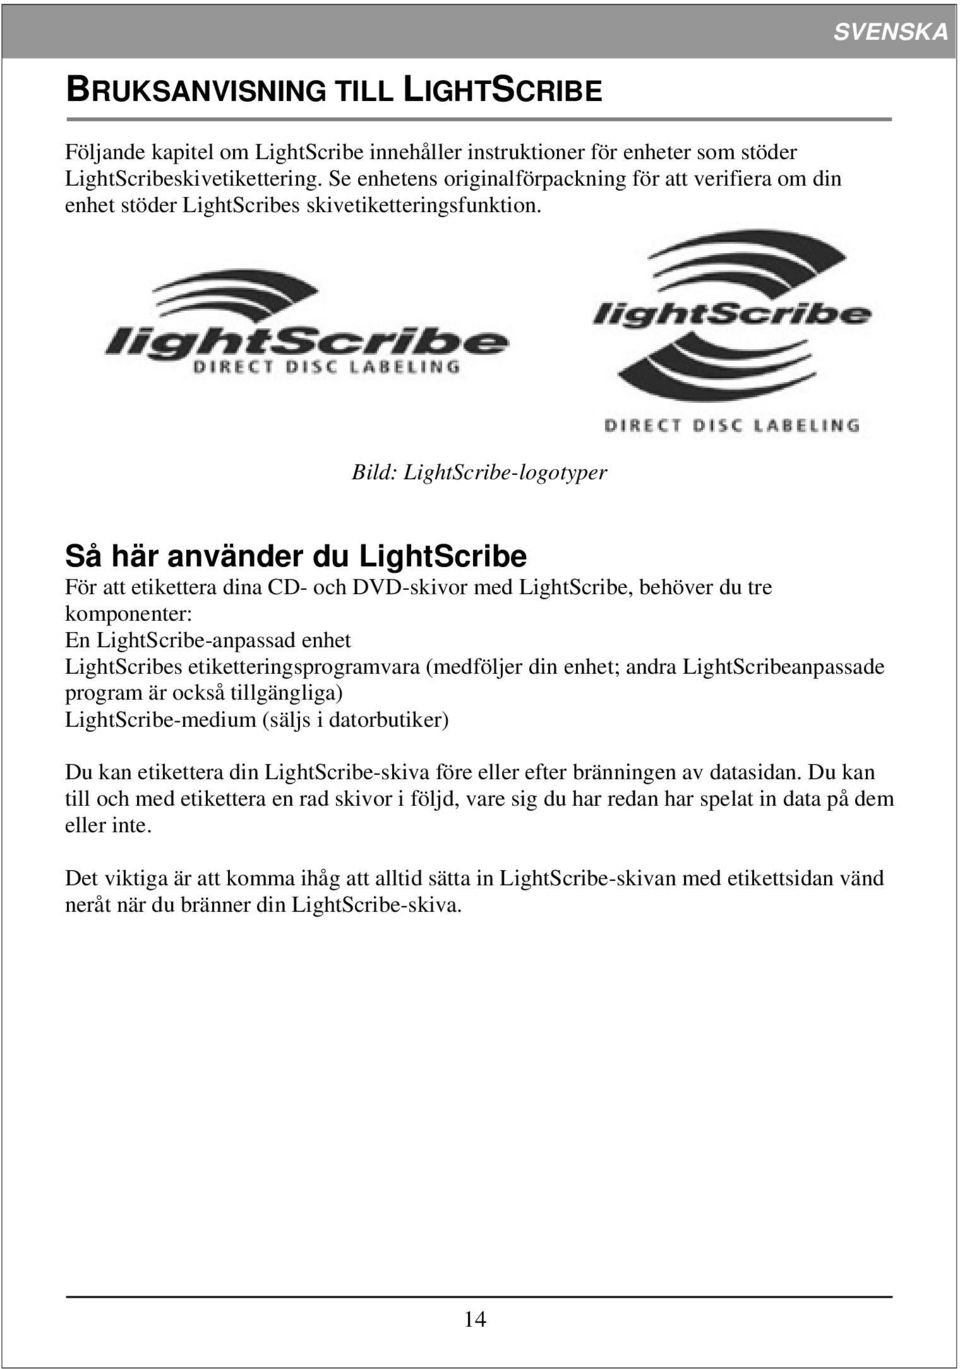 Bild: LightScribe-logotyper Så här använder du LightScribe För att etikettera dina CD- och DVD-skivor med LightScribe, behöver du tre komponenter: En LightScribe-anpassad enhet LightScribes